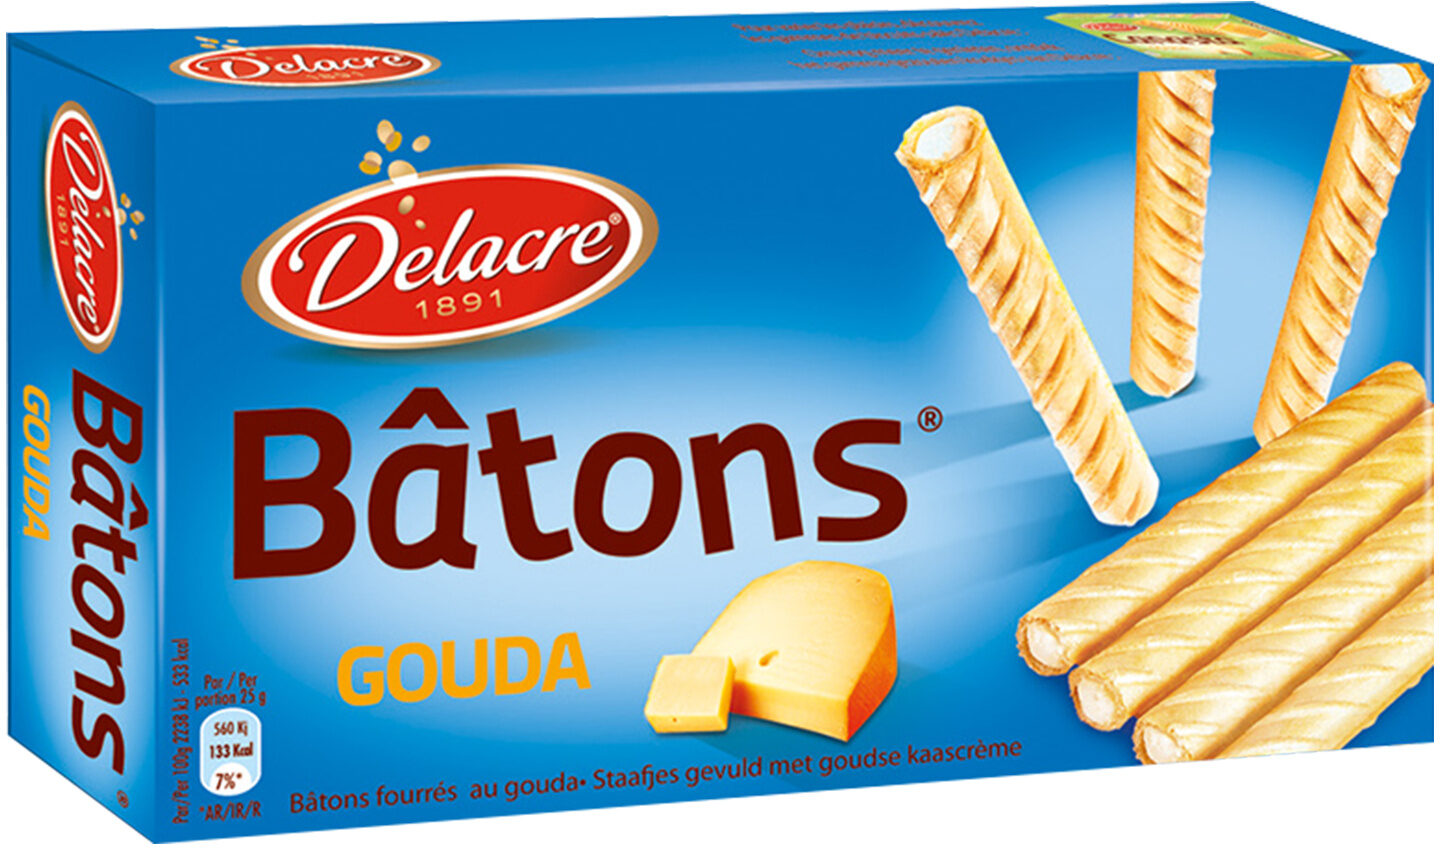 Biscuits Delacre Bâtons Fourrés gouda - 60G - Product - fr